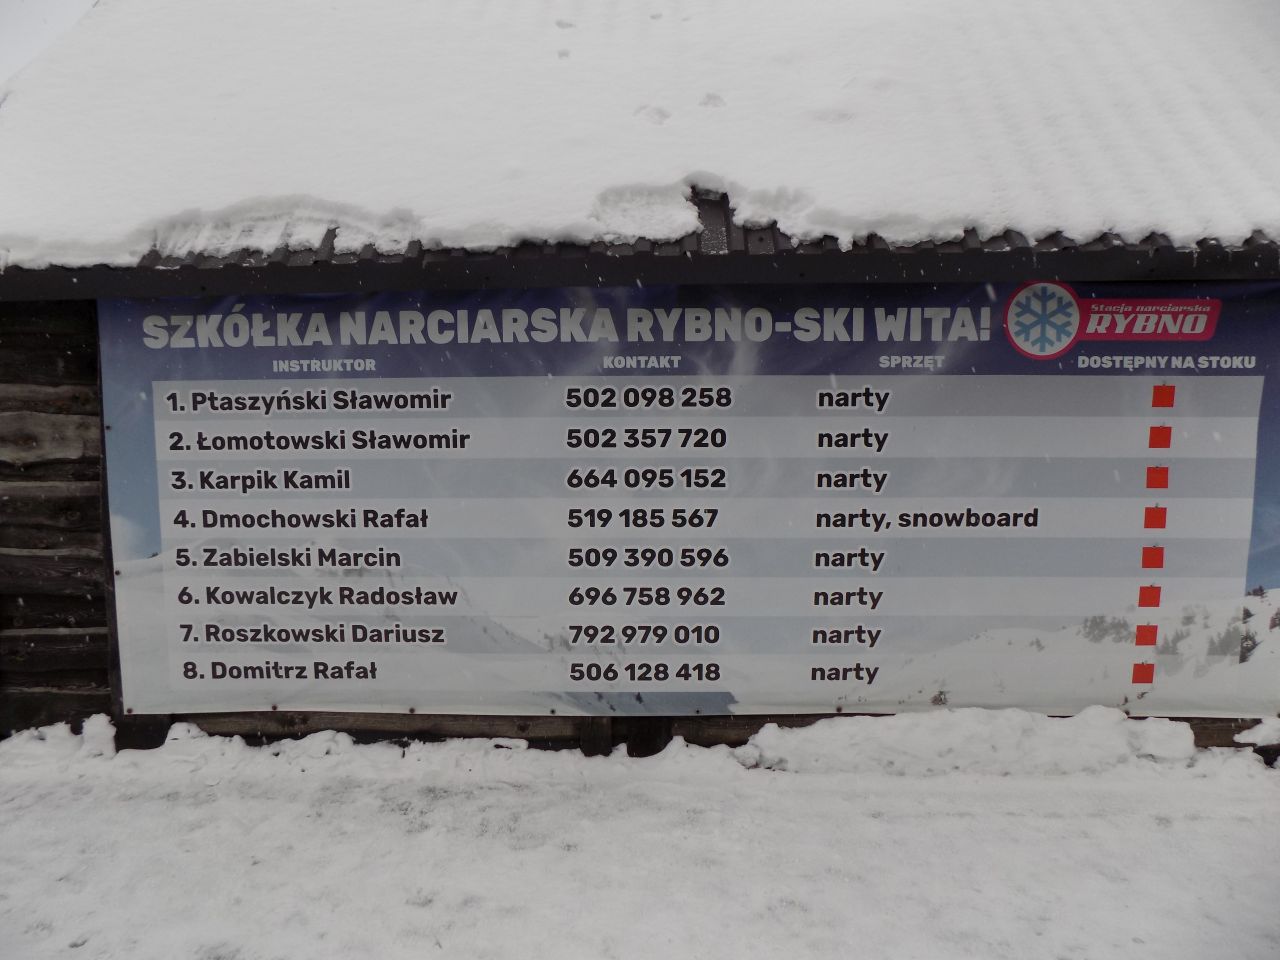 Instruktorzy ze stacji narciarskiej Rybno